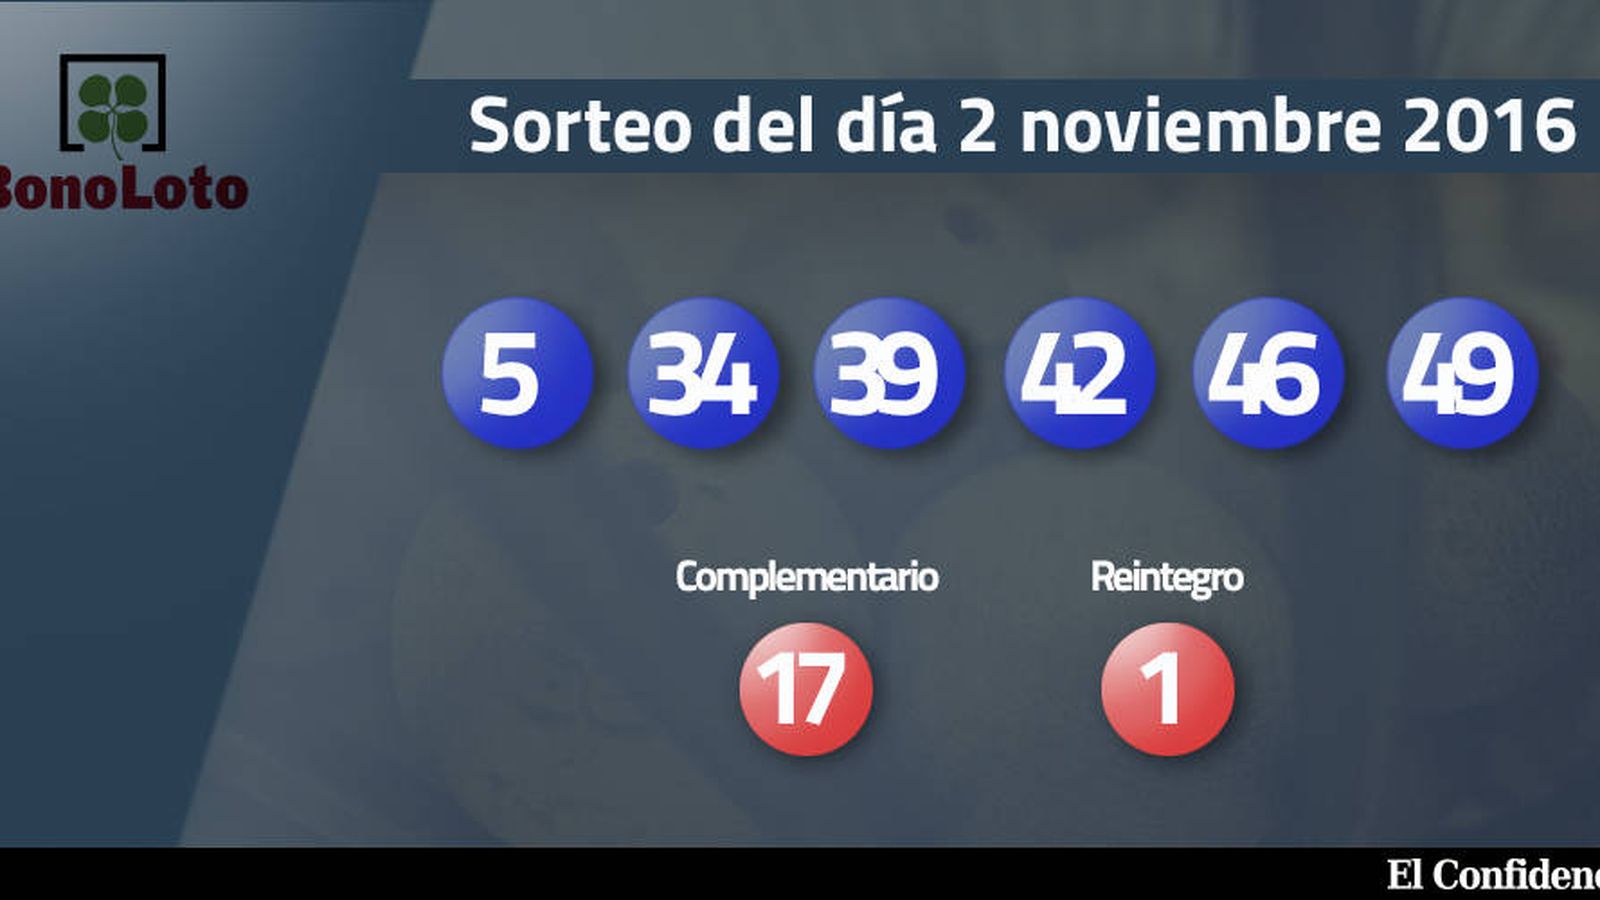 Foto: Resultados del sorteo de la Bonoloto del 2 noviembre 2016 (EC)